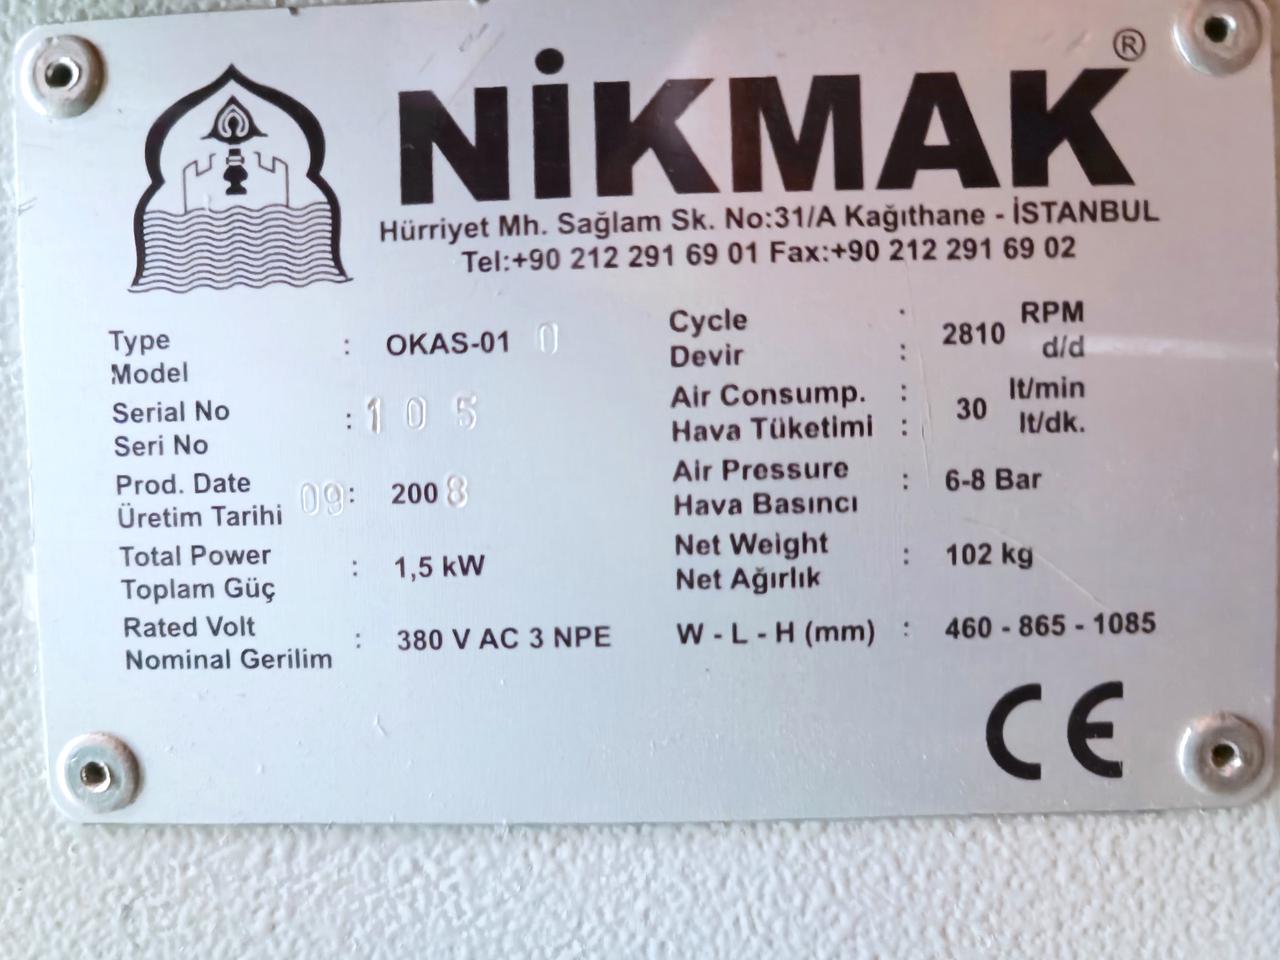 NIKMAK OKAS-01 Станок для обработки торцов импоста из ПВХ и алюминиевых профилей с системой быстрой смены фрезы (Б/У оборудование)